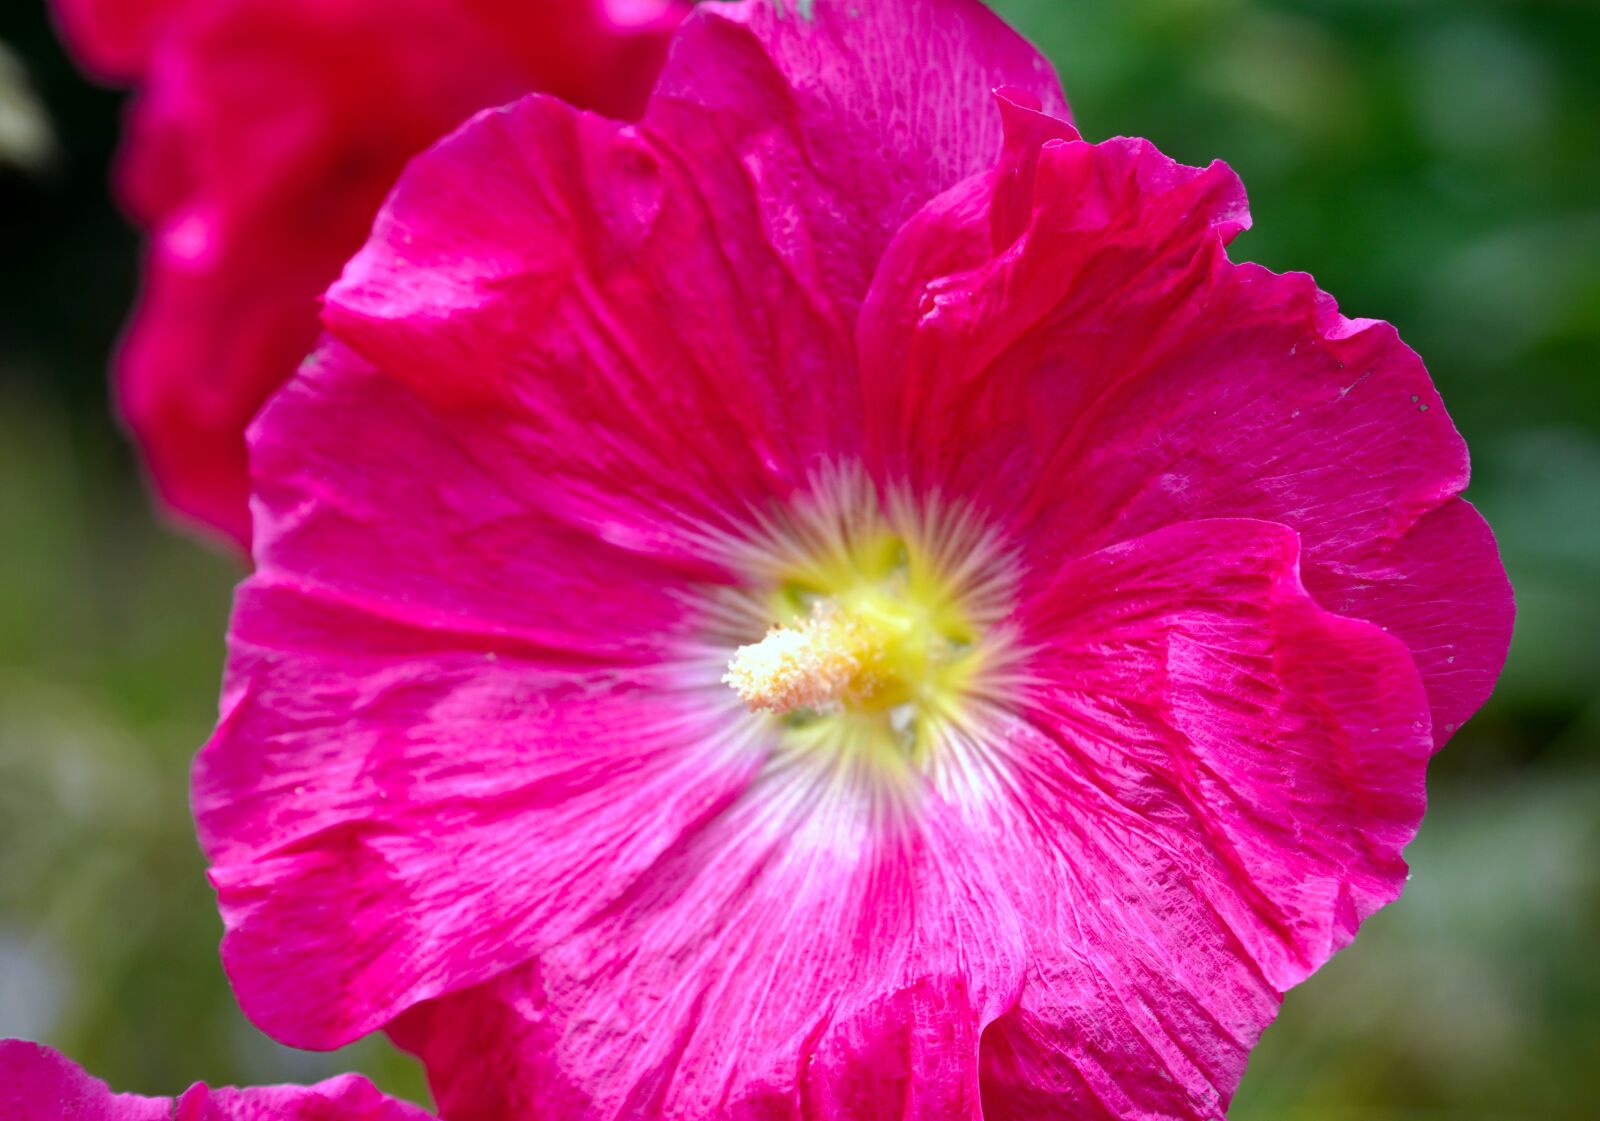 Sony E PZ 18-105mm F4 G OSS sample photo. Stock rose, flower, blossom photography